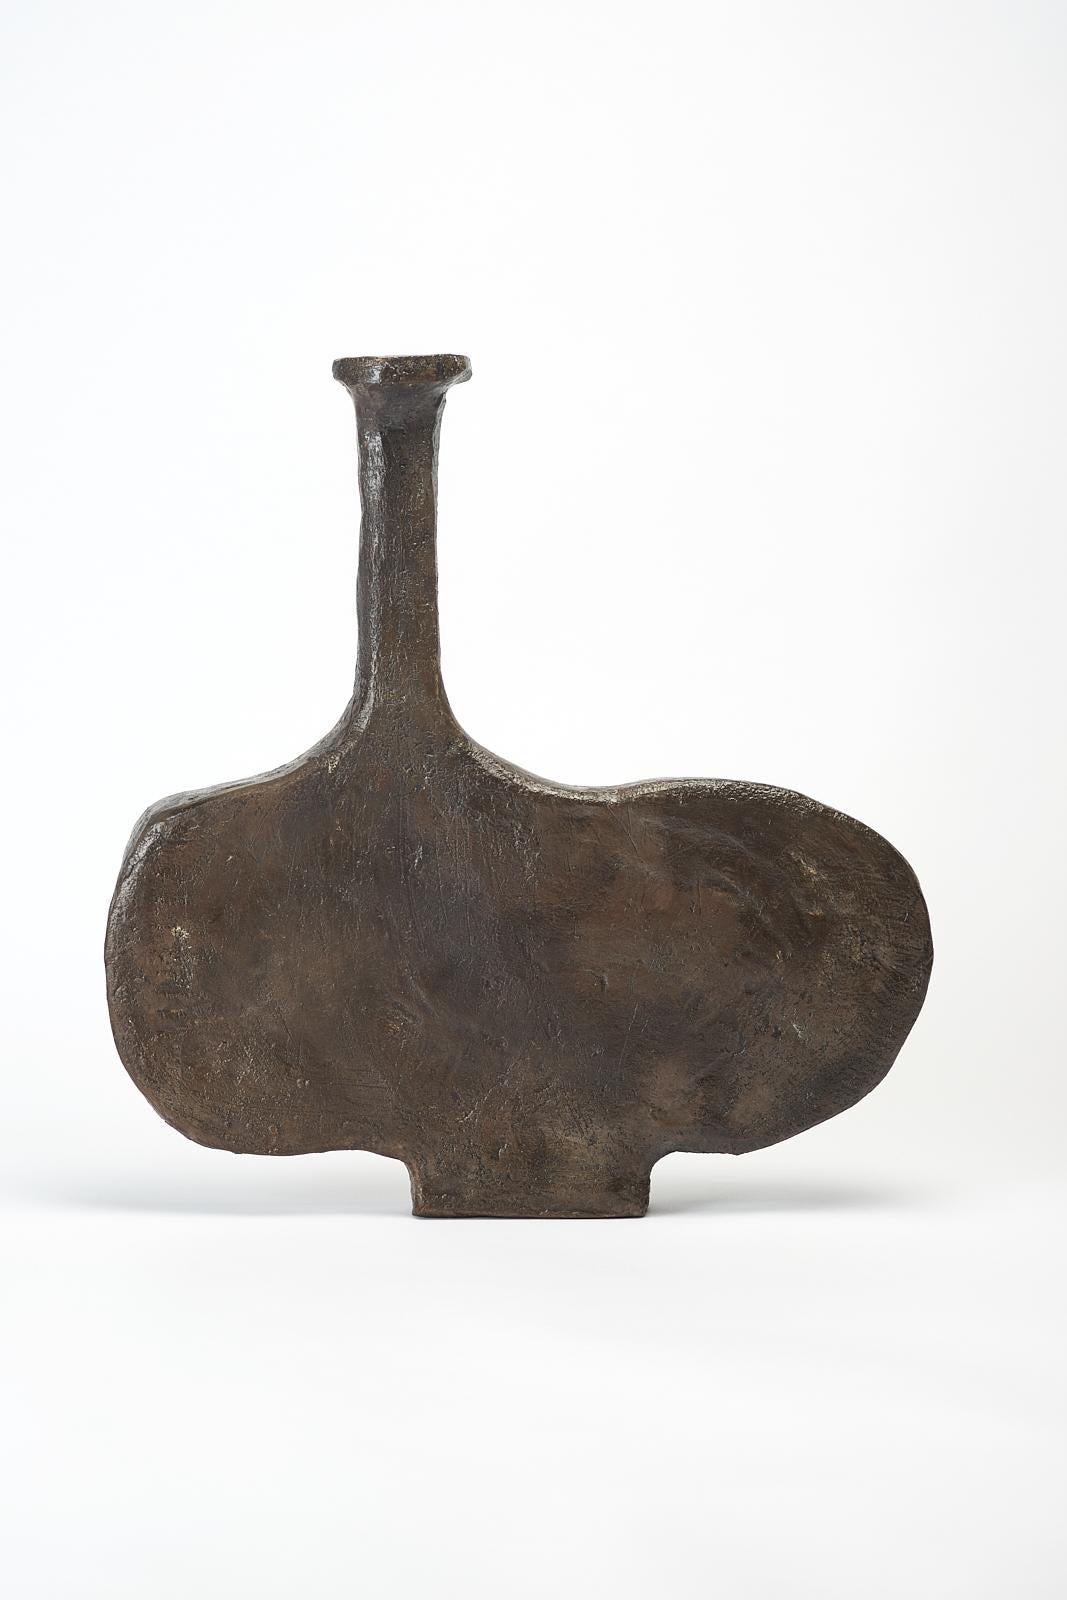 Dege-Vase von Willem Van Hooff
Kerngefäß-Serie
Abmessungen: B 41 x T 10 x H 43 cm (Die Maße können variieren, da es sich um handgefertigte Stücke handelt, die leichte Größenabweichungen aufweisen können)
MATERIALIEN: Steingut, Keramik, Pigmente,